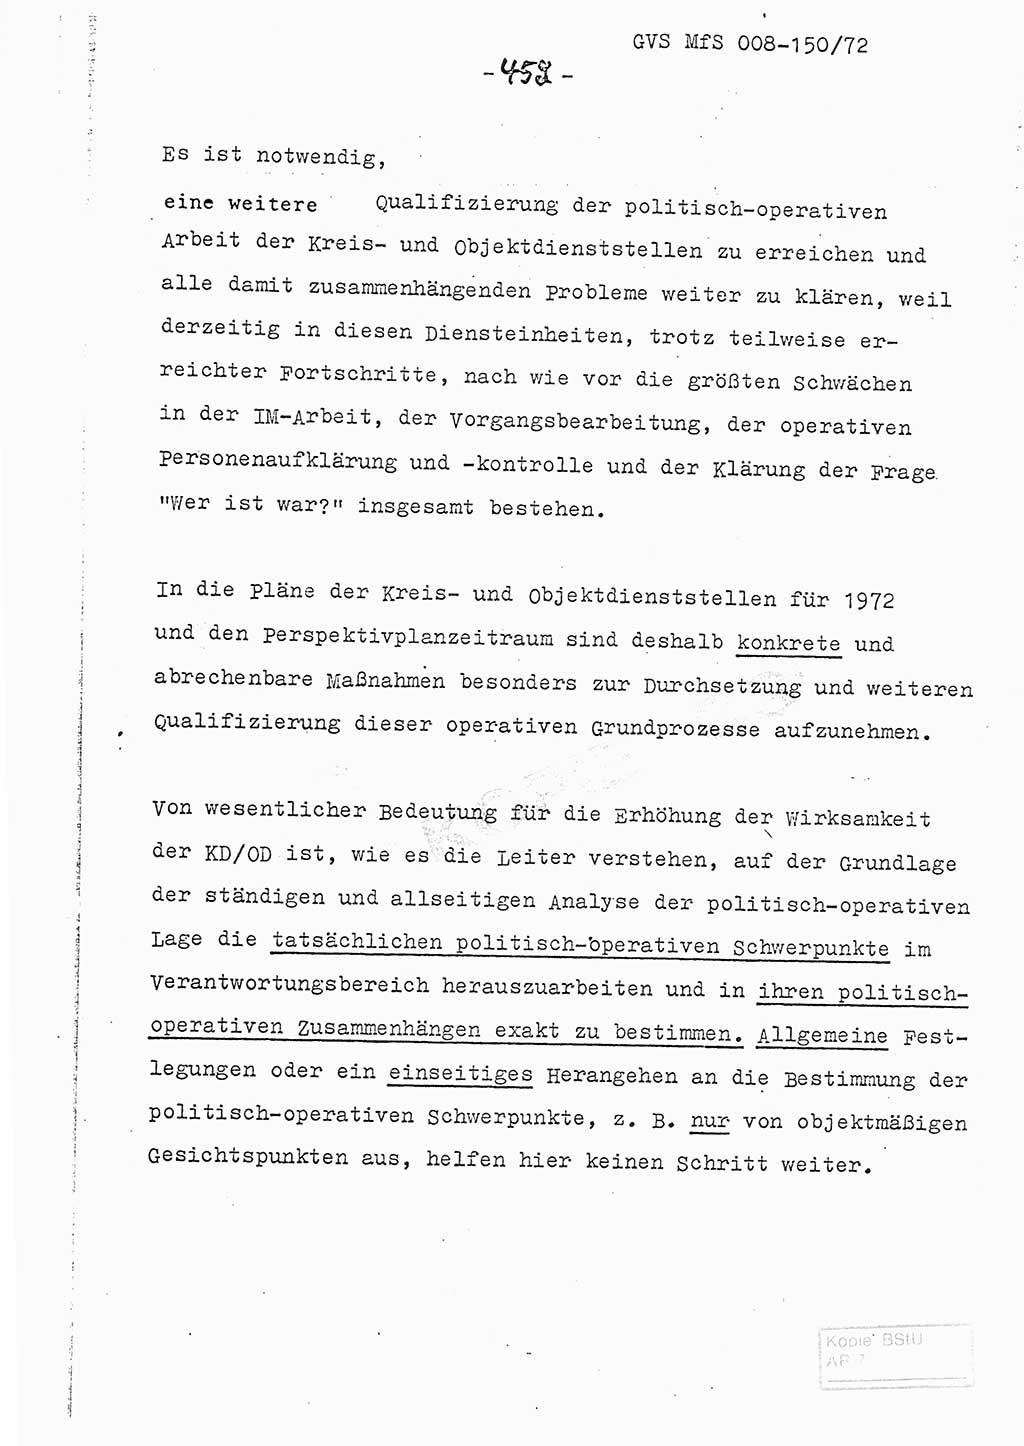 Referat (Entwurf) des Genossen Minister (Generaloberst Erich Mielke) auf der Dienstkonferenz 1972, Ministerium für Staatssicherheit (MfS) [Deutsche Demokratische Republik (DDR)], Der Minister, Geheime Verschlußsache (GVS) 008-150/72, Berlin 25.2.1972, Seite 452 (Ref. Entw. DK MfS DDR Min. GVS 008-150/72 1972, S. 452)